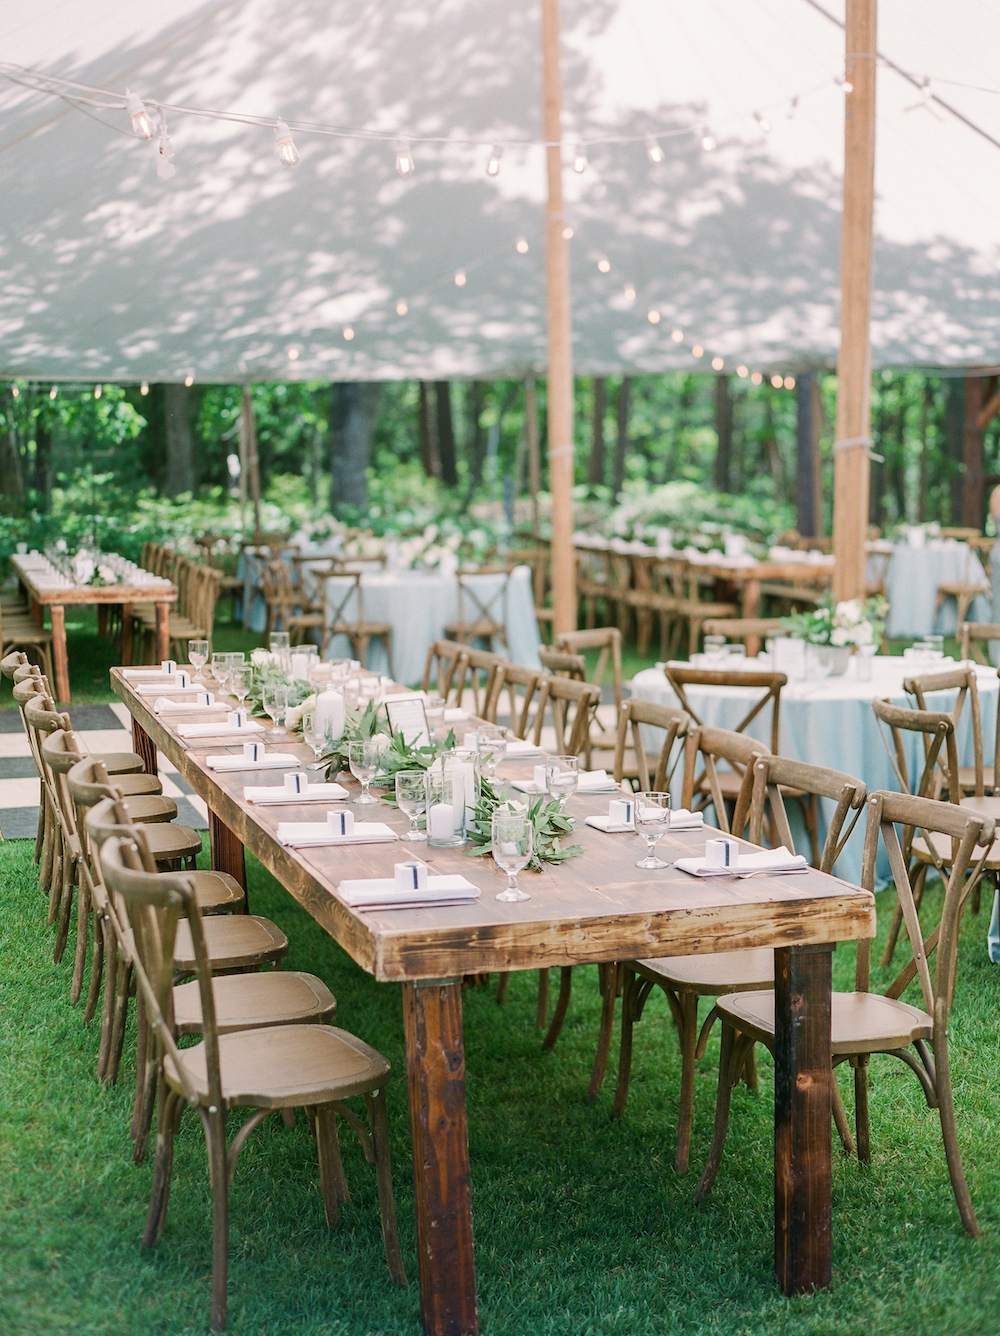 Tables set for a Leelanau School wedding